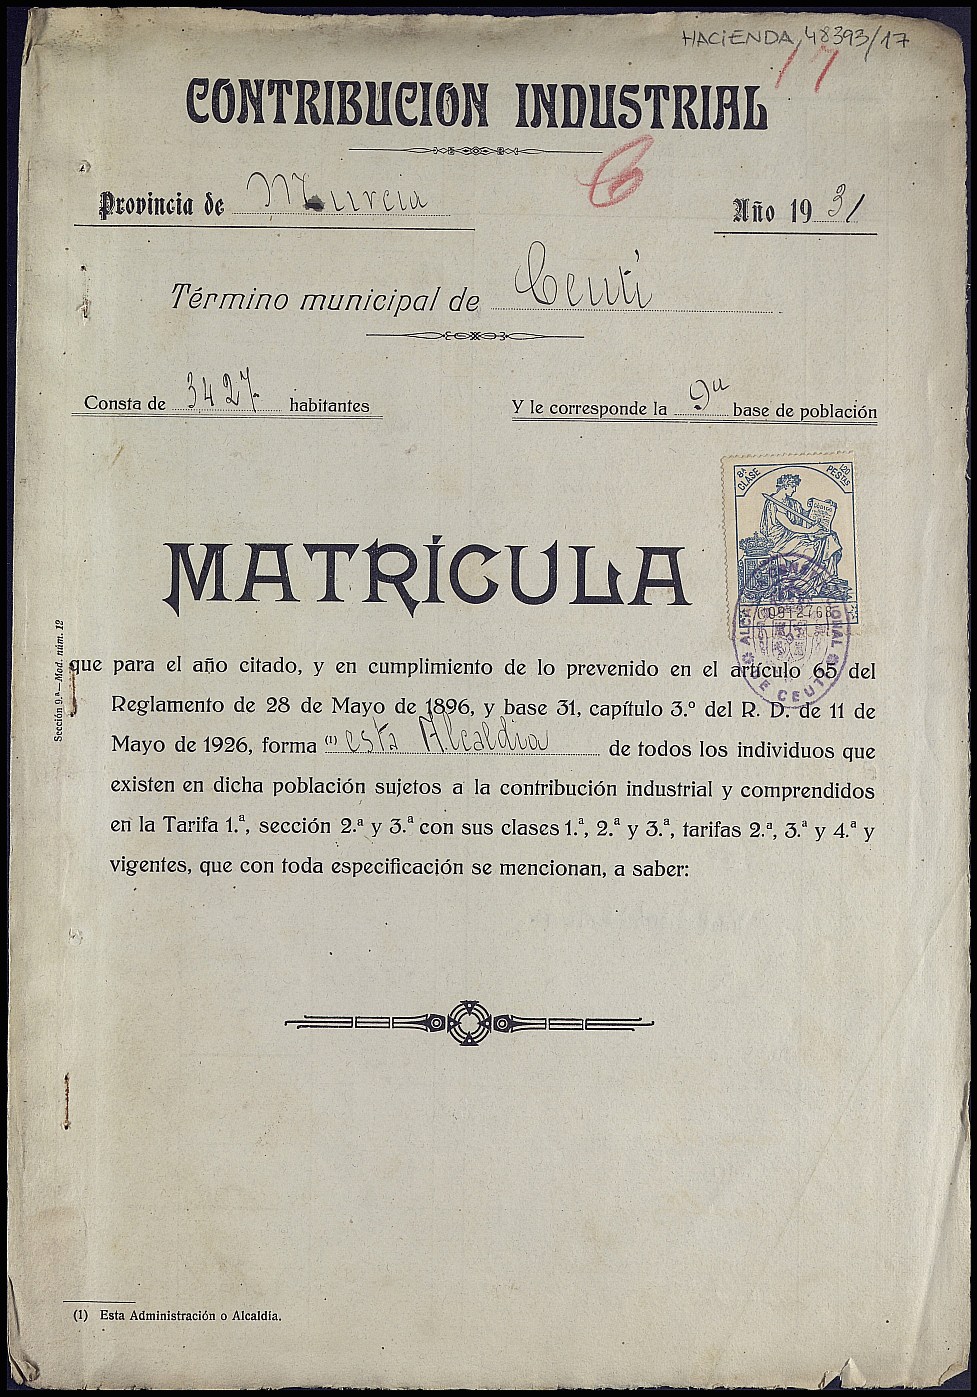 Matrícula de la contribución industrial de Ceutí. Año 1931.